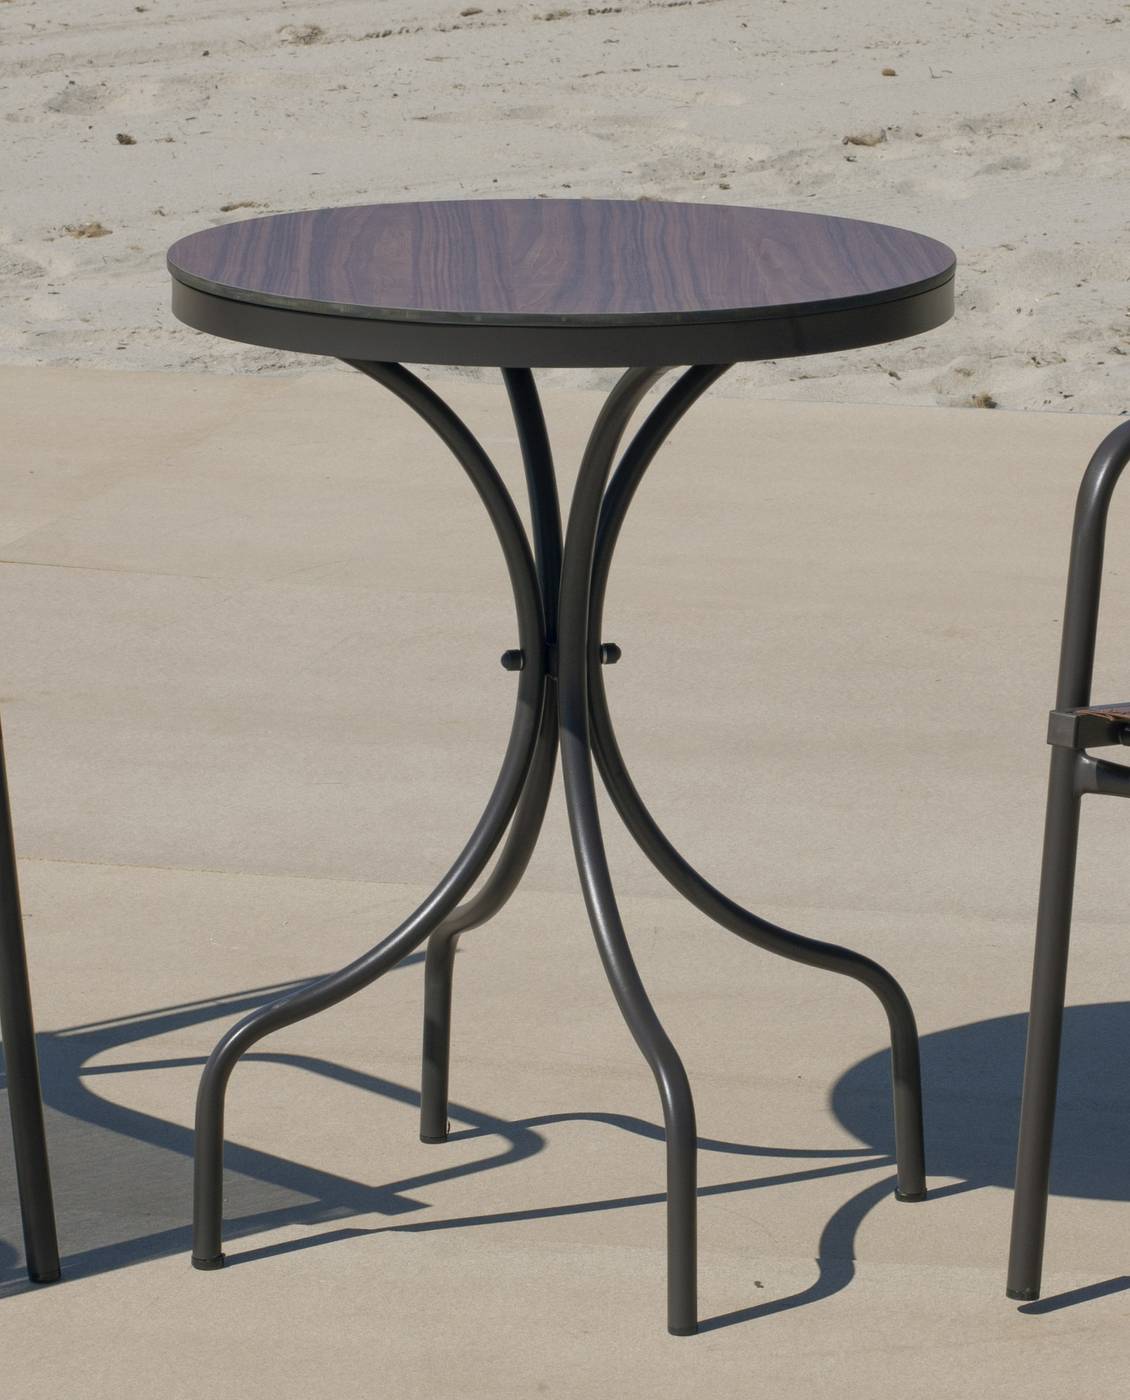 Set Dubay-60-2 Leiran - Conjunto aluminio color marrón: Mesa redonda con tablero HPL de 60 cm + 2 sillones de textilen.